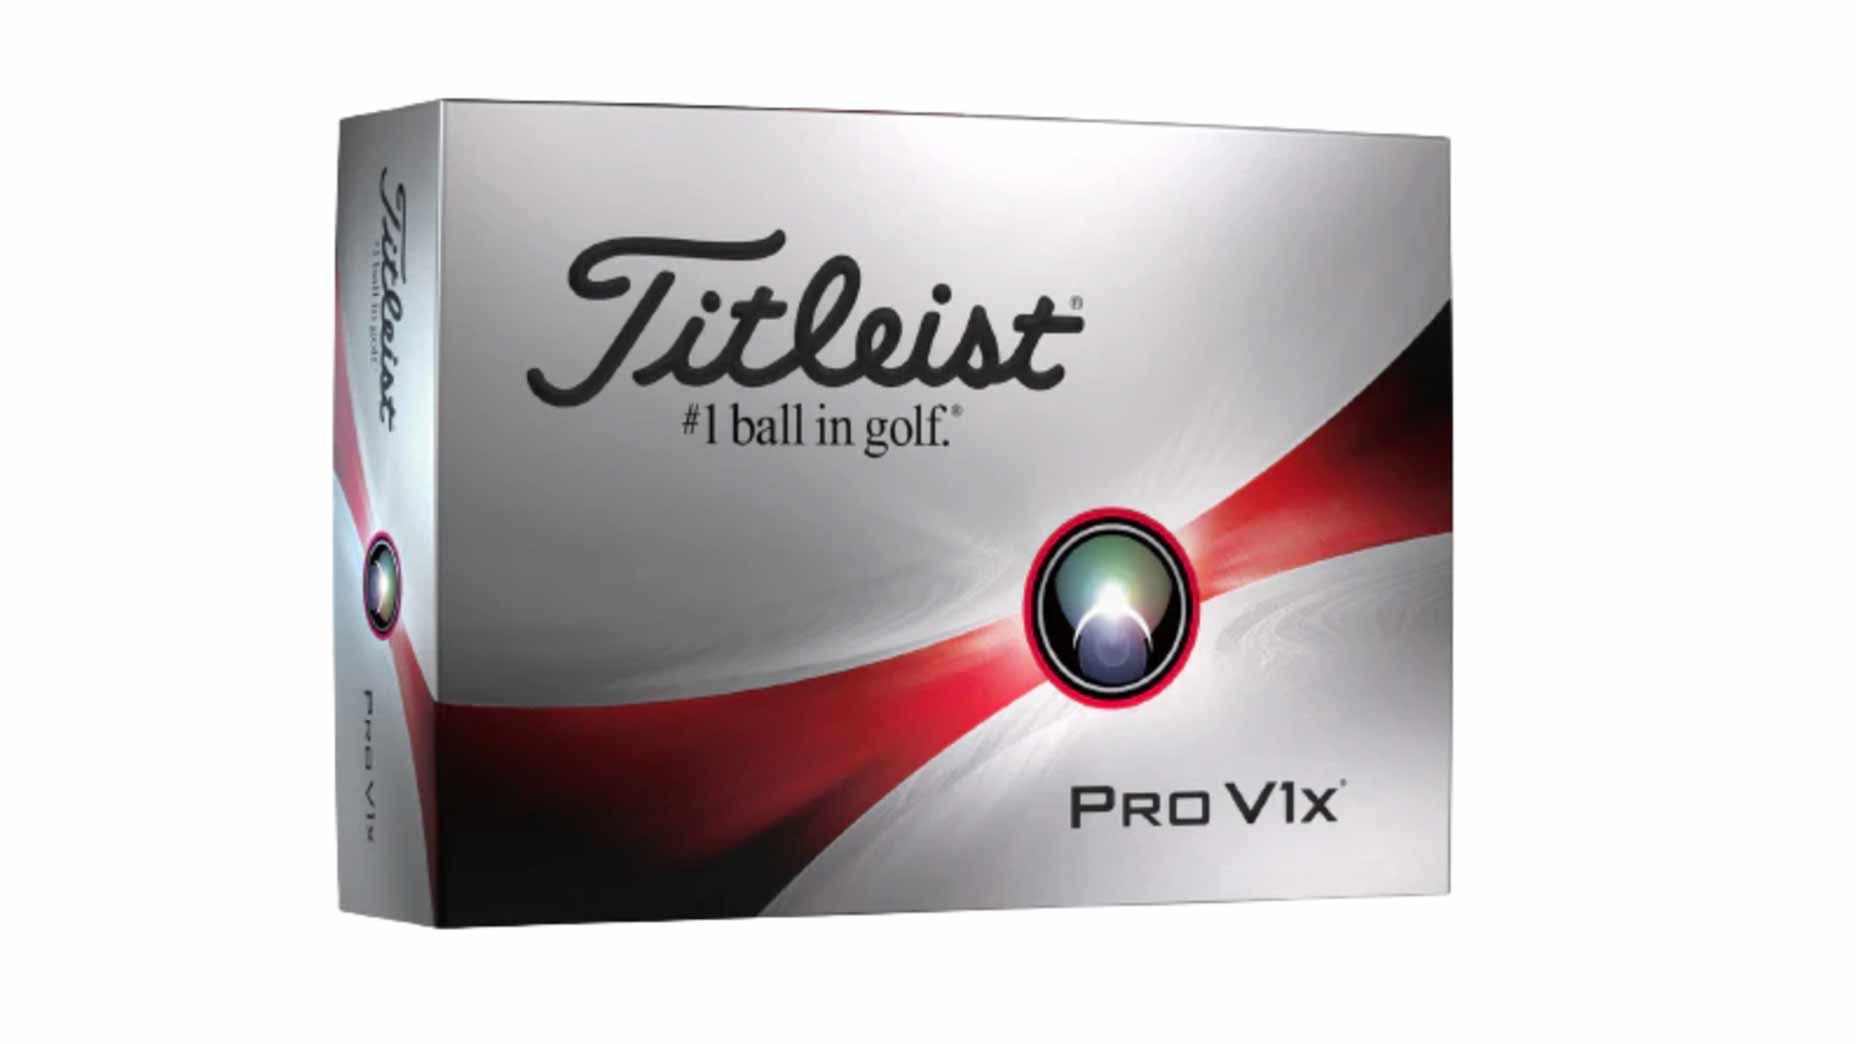 a box of titleist golf balls